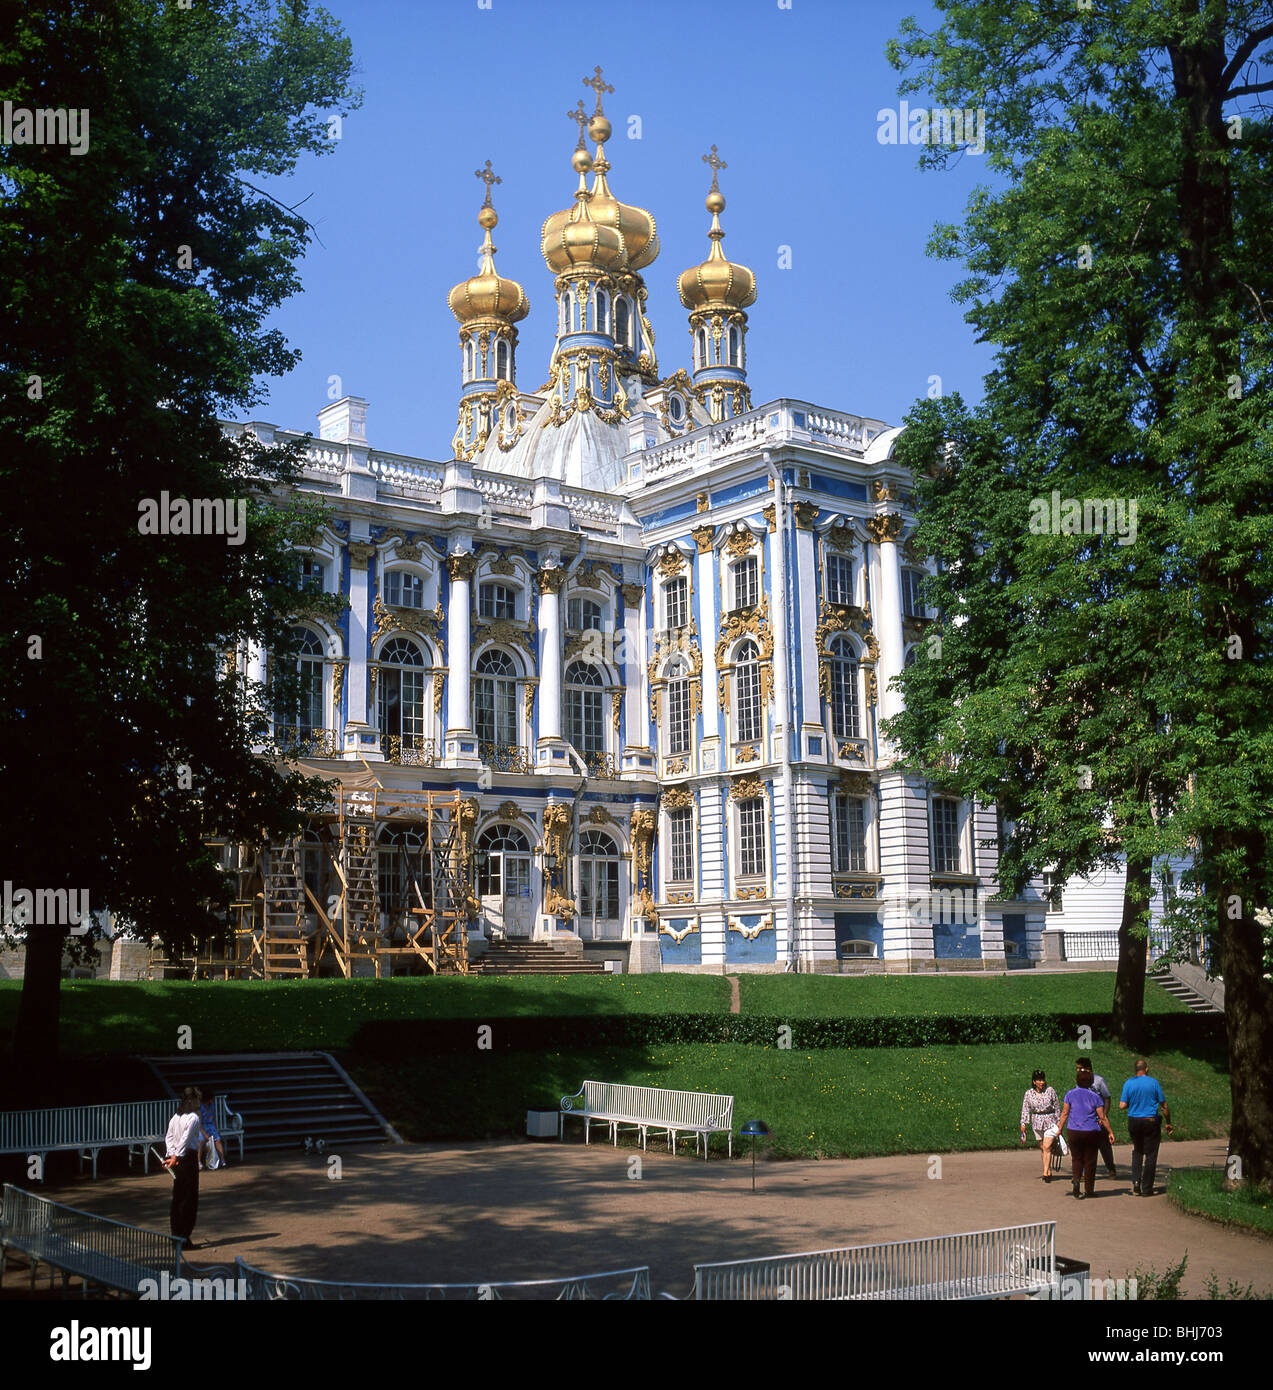 Le Palais de Catherine et de jardins, Puskin, Saint Petersburg, Russie, Région Nord-Ouest Banque D'Images